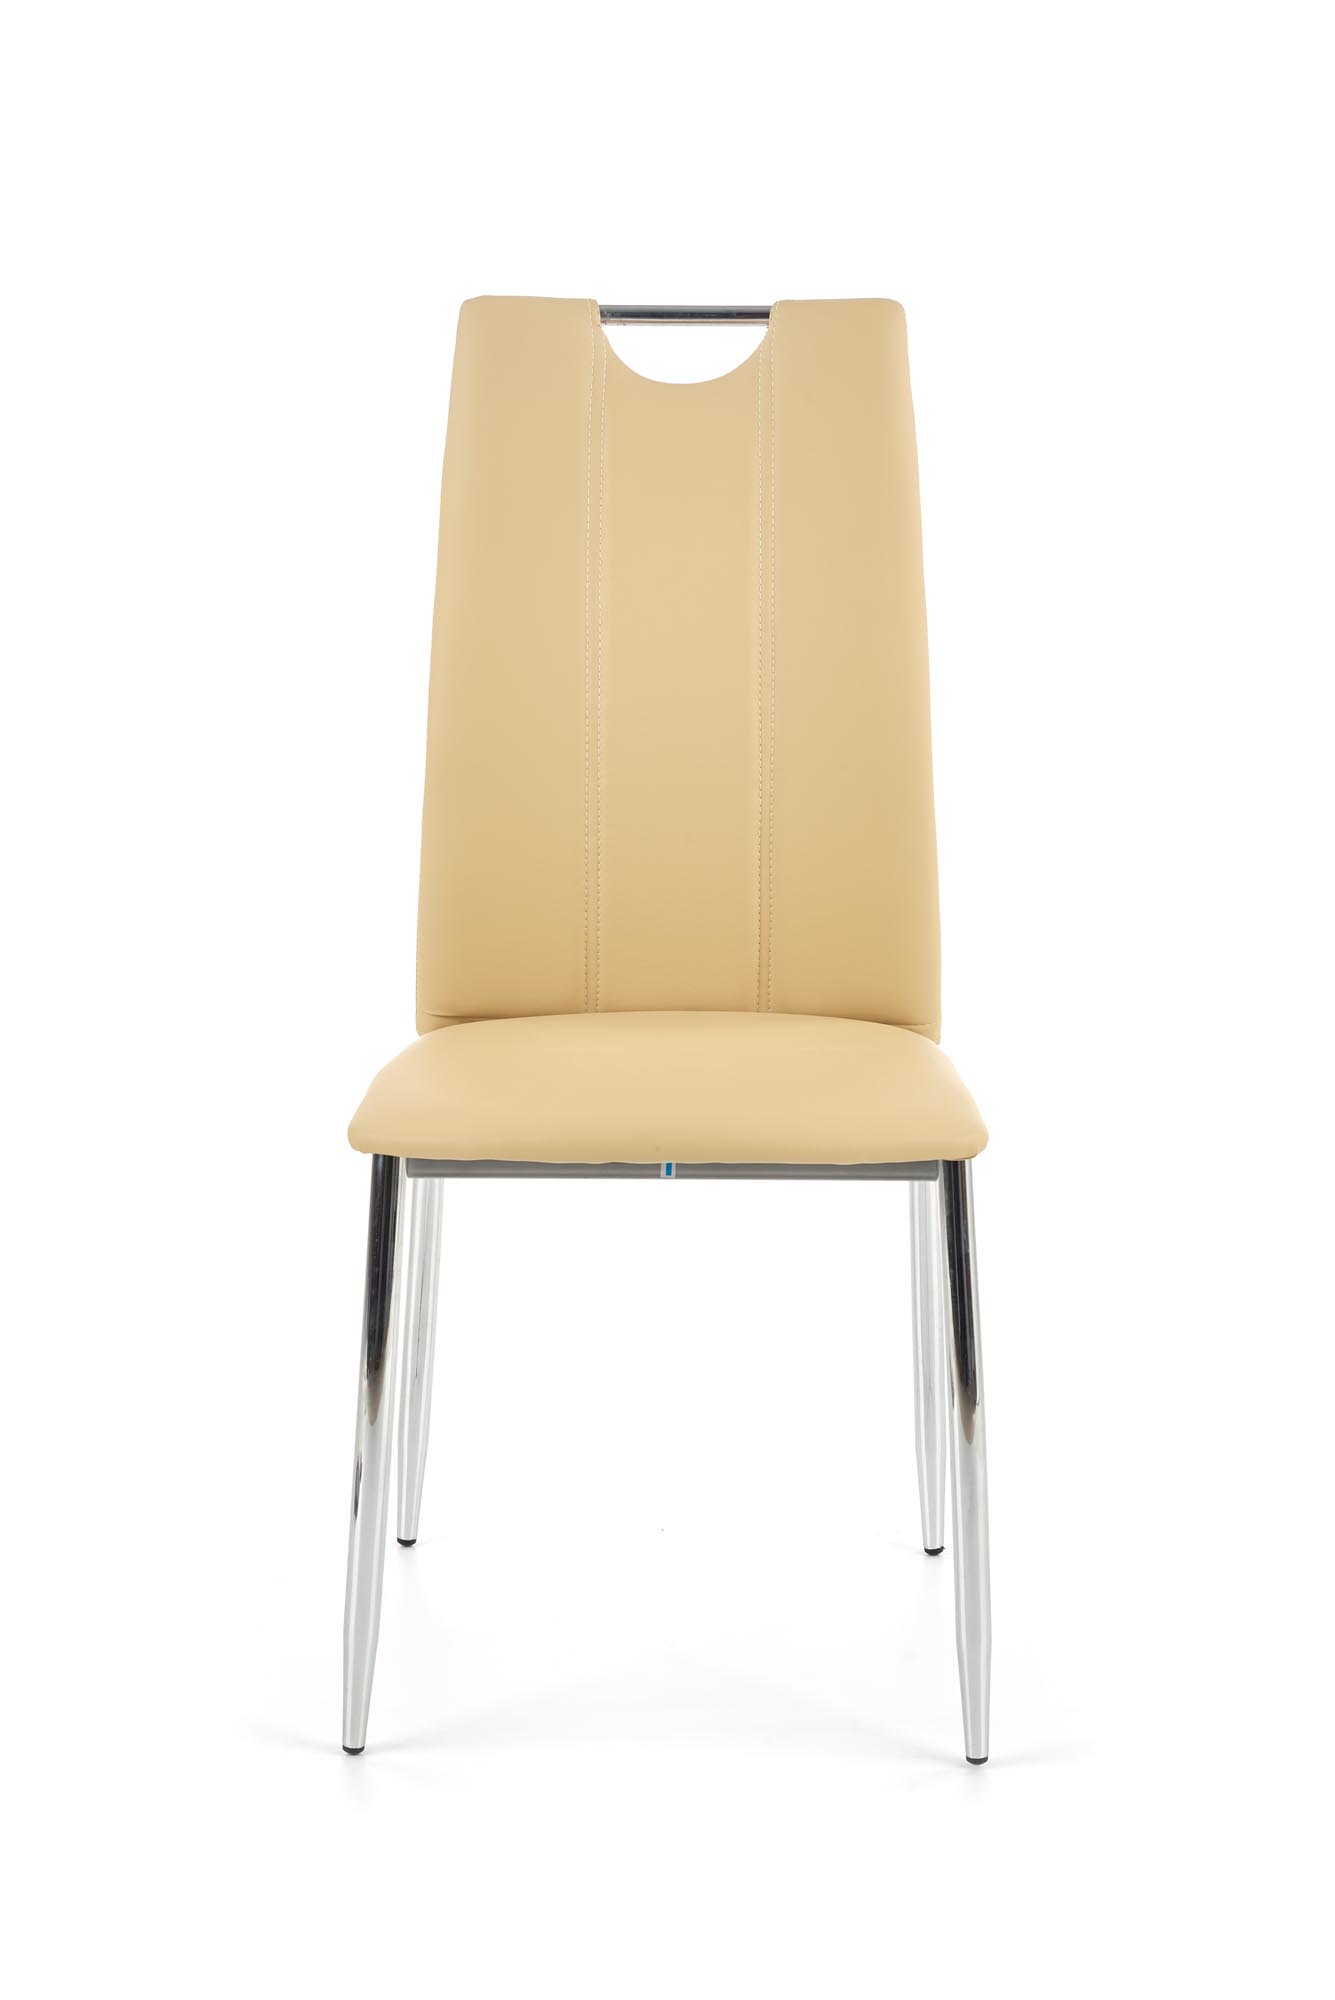 K187 Židle béžová k187 židle béžový